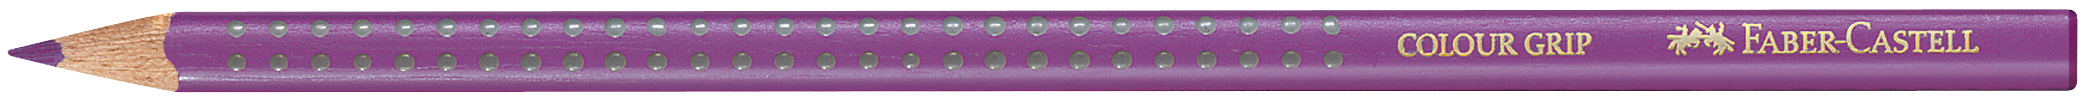 FABER-CASTELL Crayon de couleur Colour Grip 112434 karmin